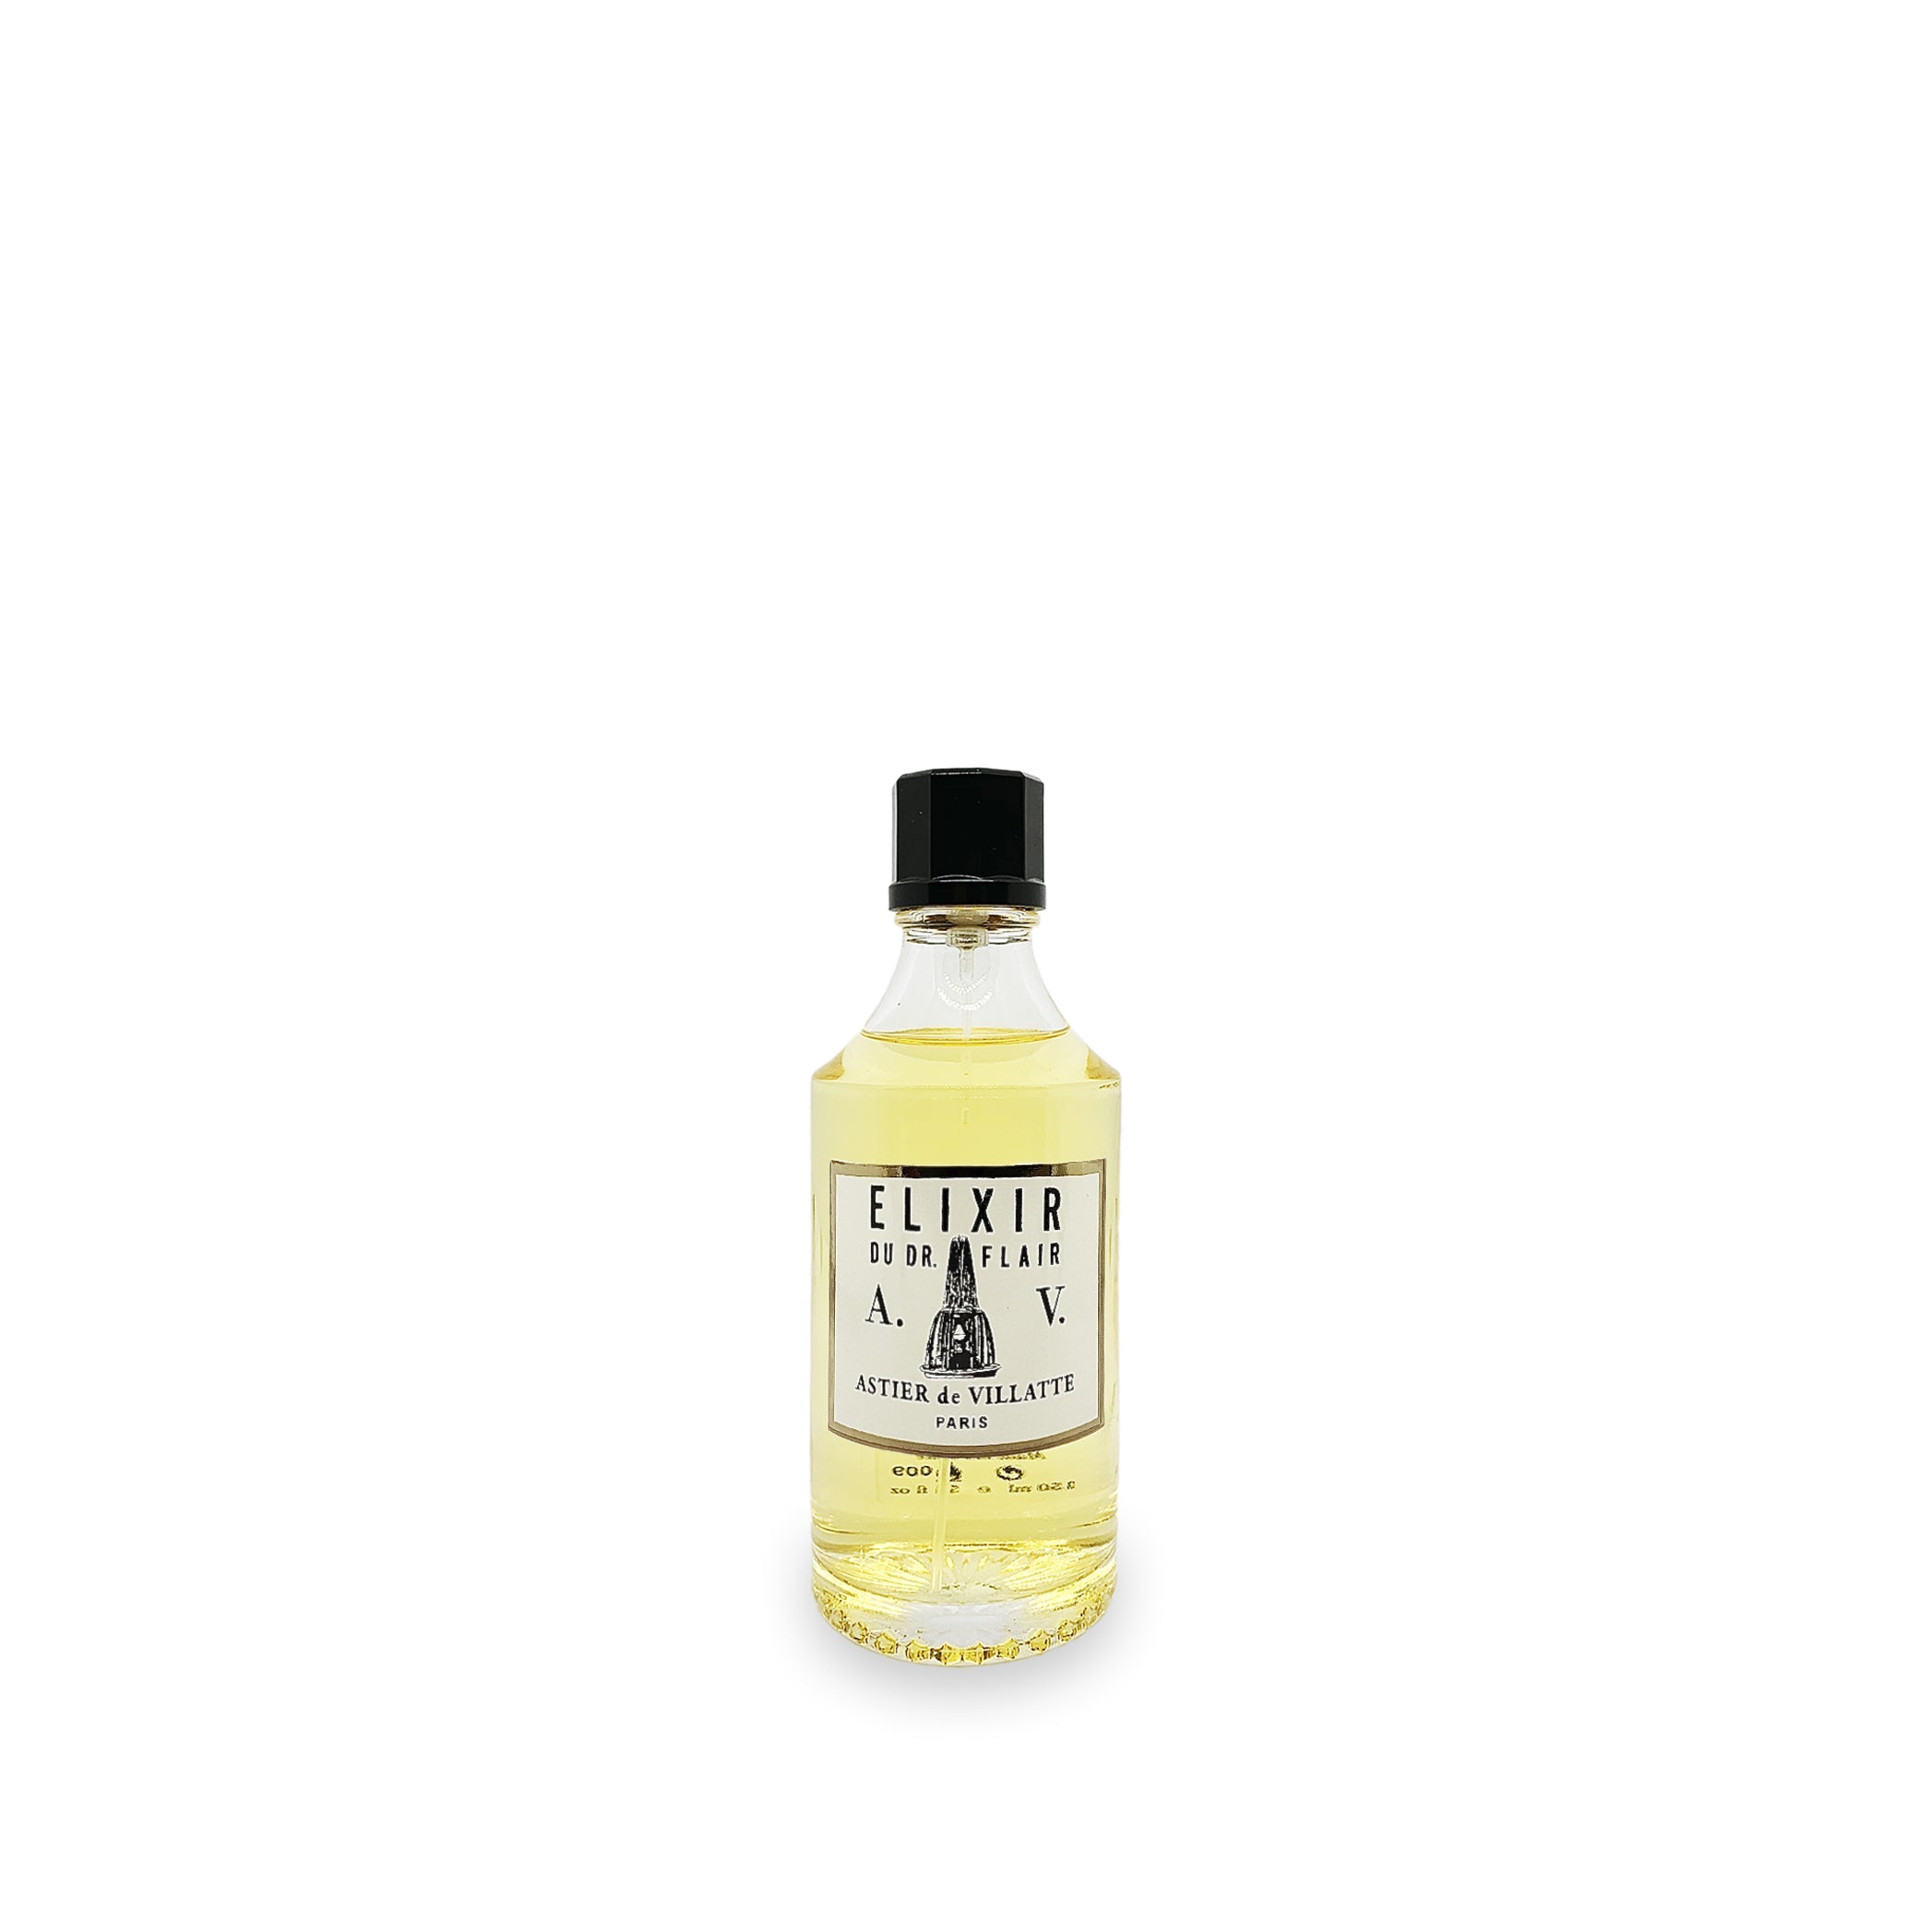 Elixir Eau de Cologne by Astier de Villatte, 50ml